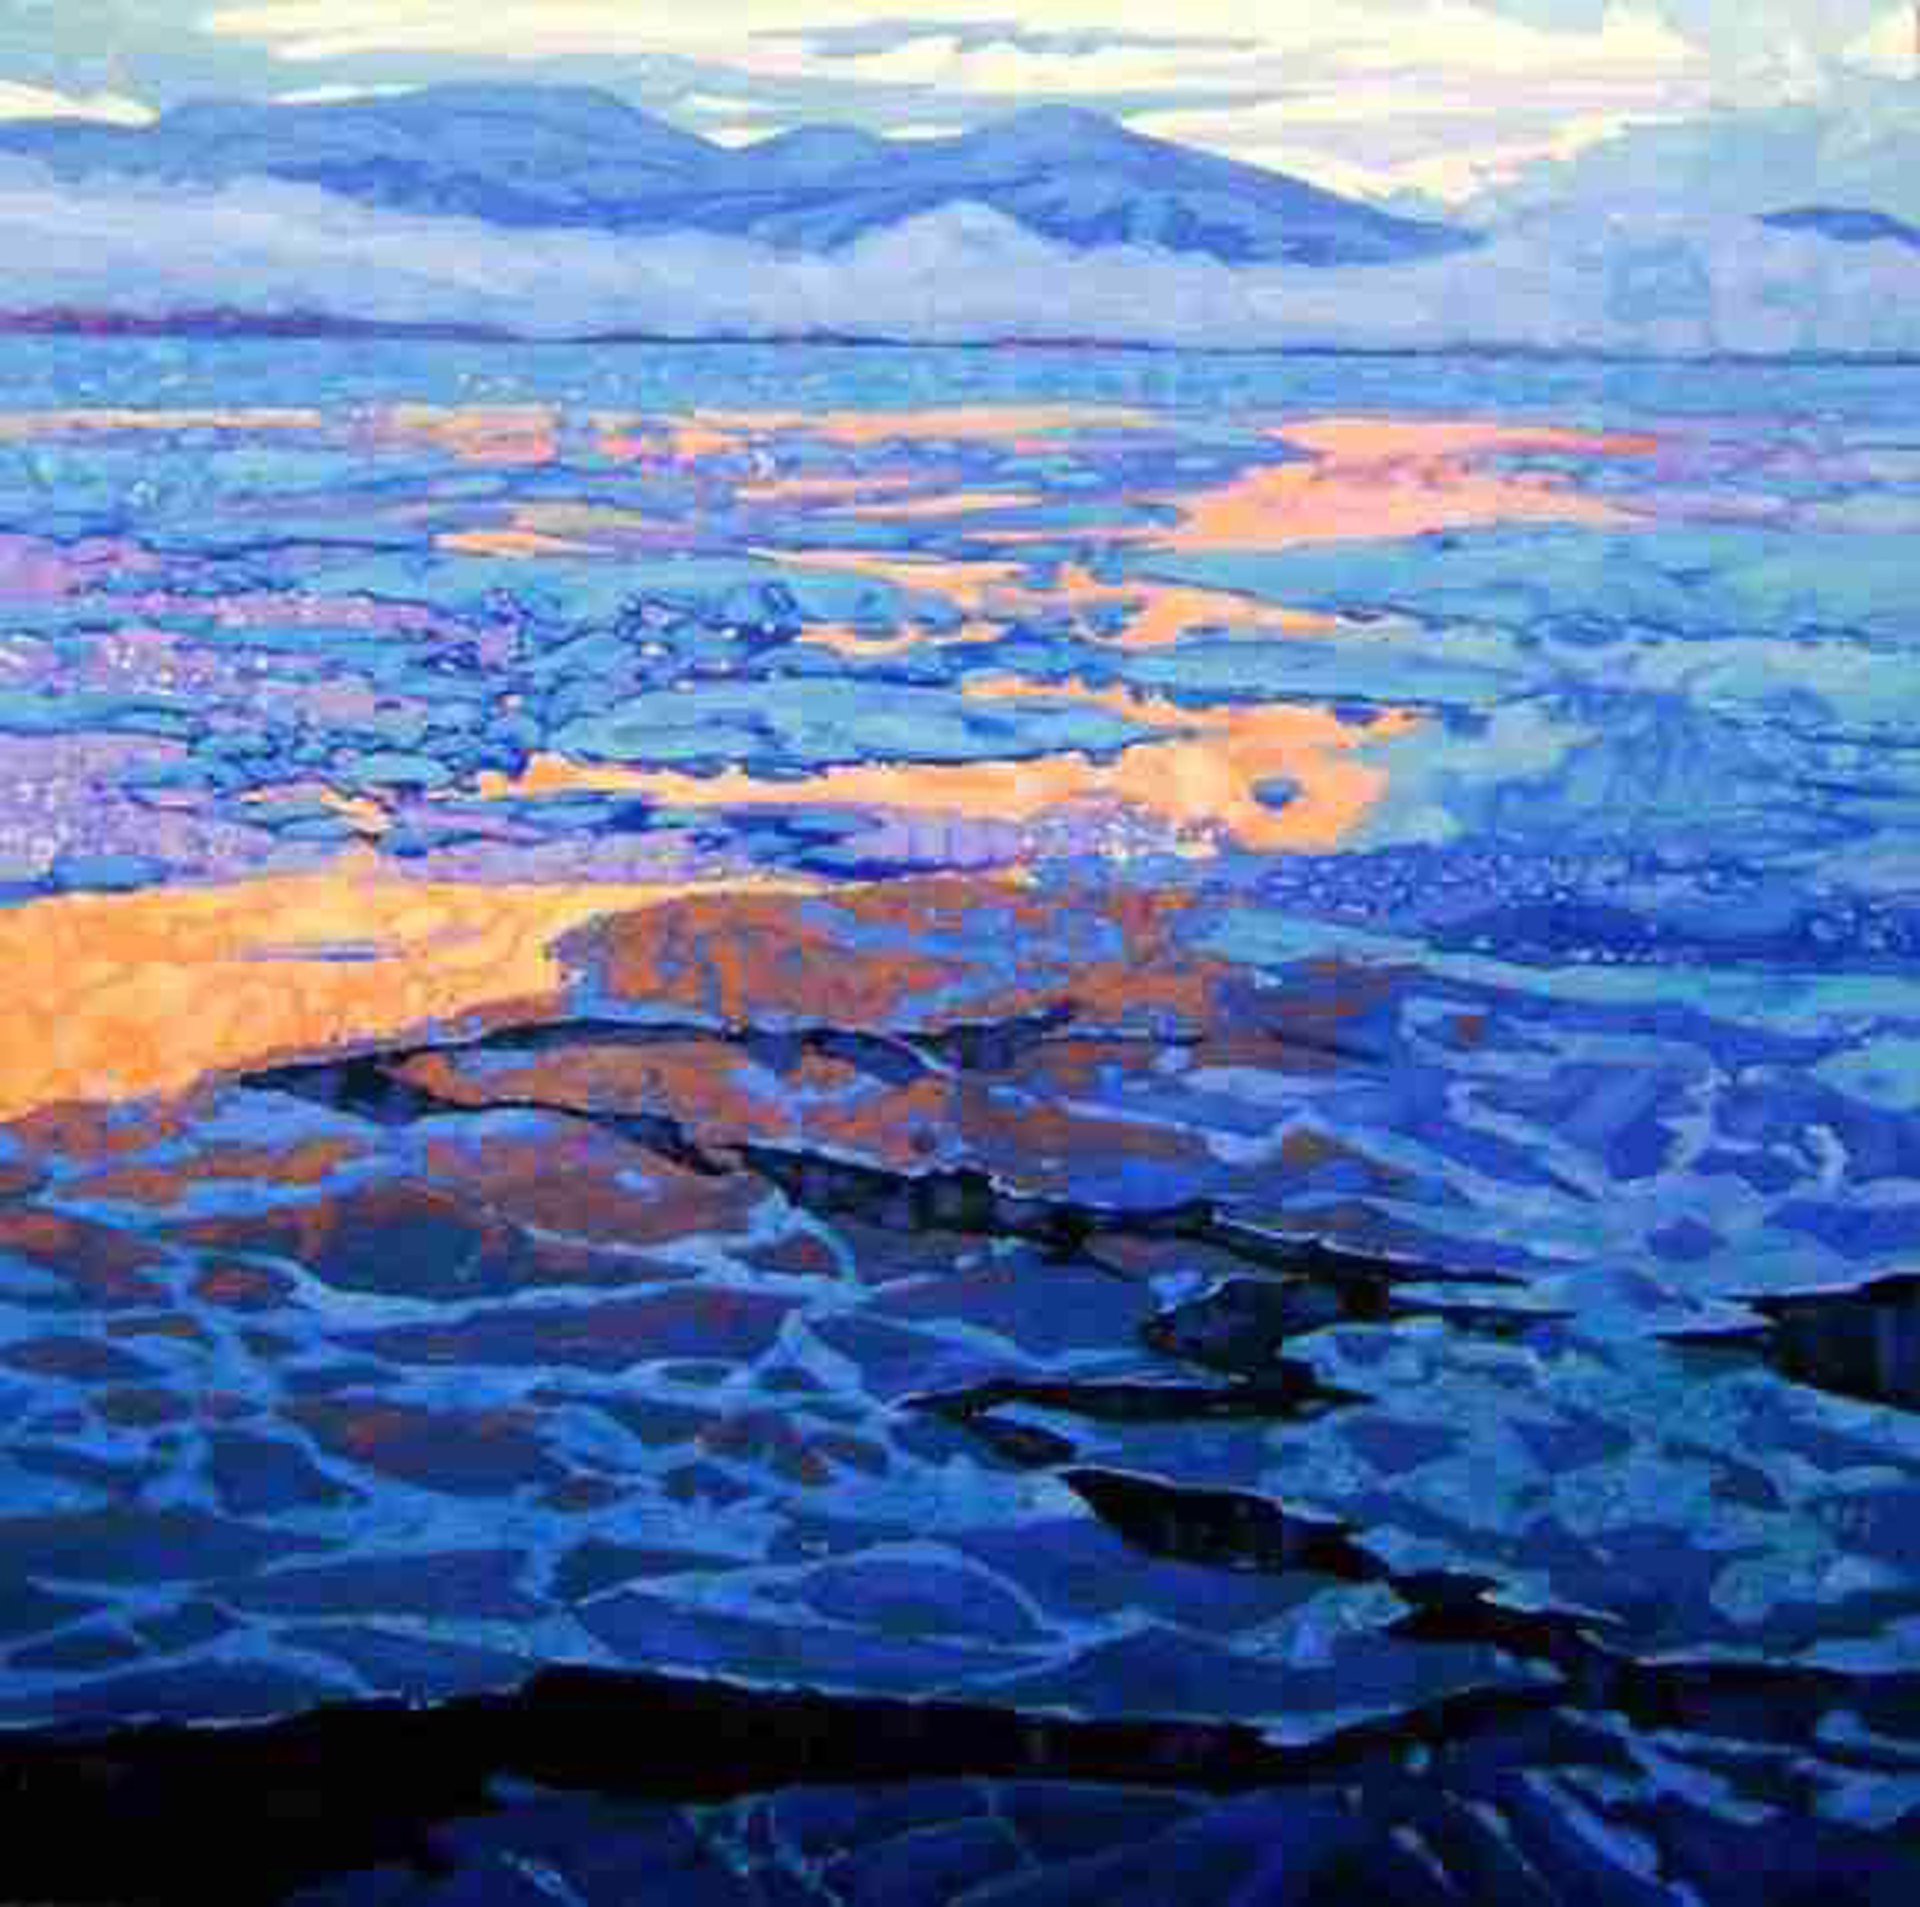 Sunset Arctic Ocean by Dominik Modlinski